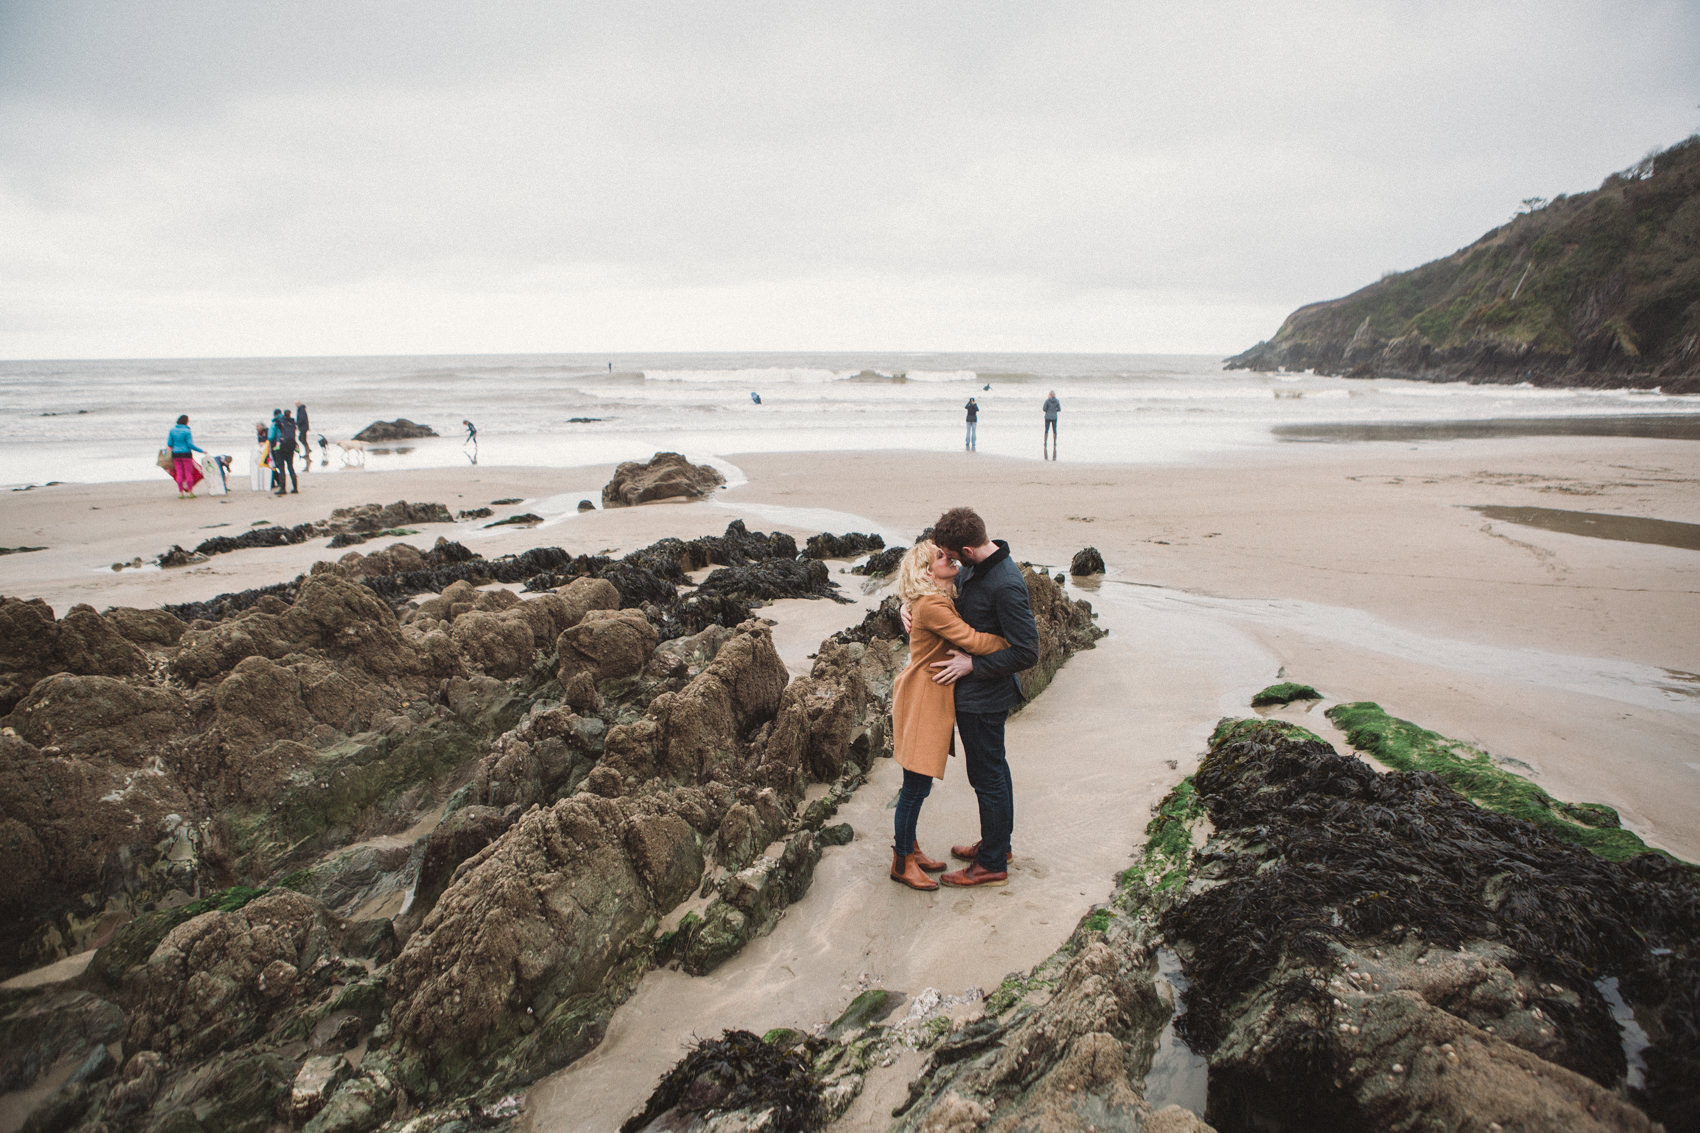 Engagement Adventures | Devon Wedding Photographer